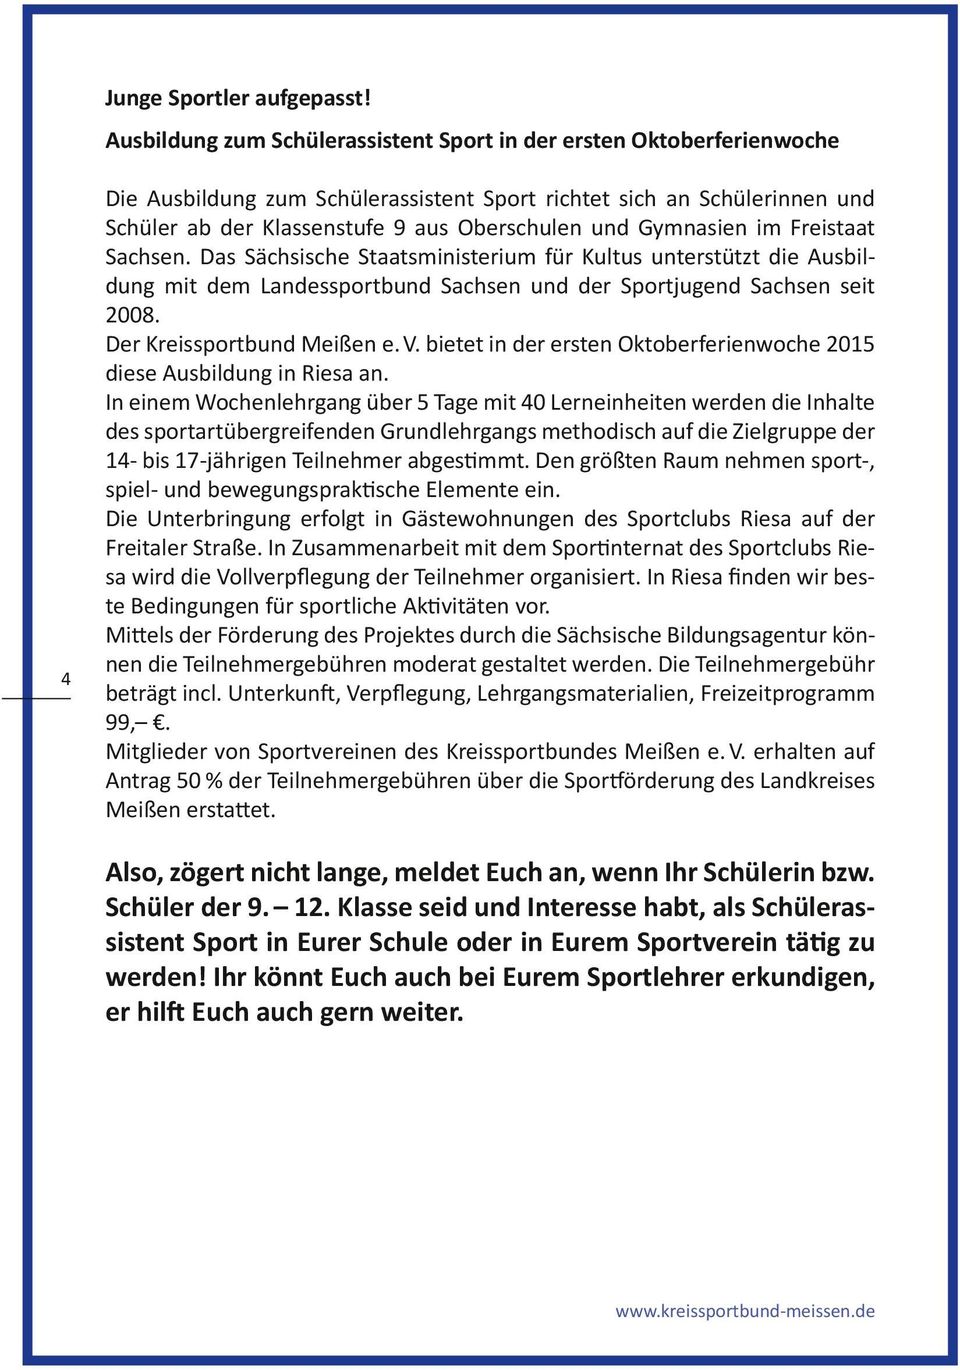 Gymnasien im Freistaat Sachsen. Das Sächsische Staatsministerium für Kultus unterstützt die Ausbildung mit dem Landessportbund Sachsen und der Sportjugend Sachsen seit 2008.